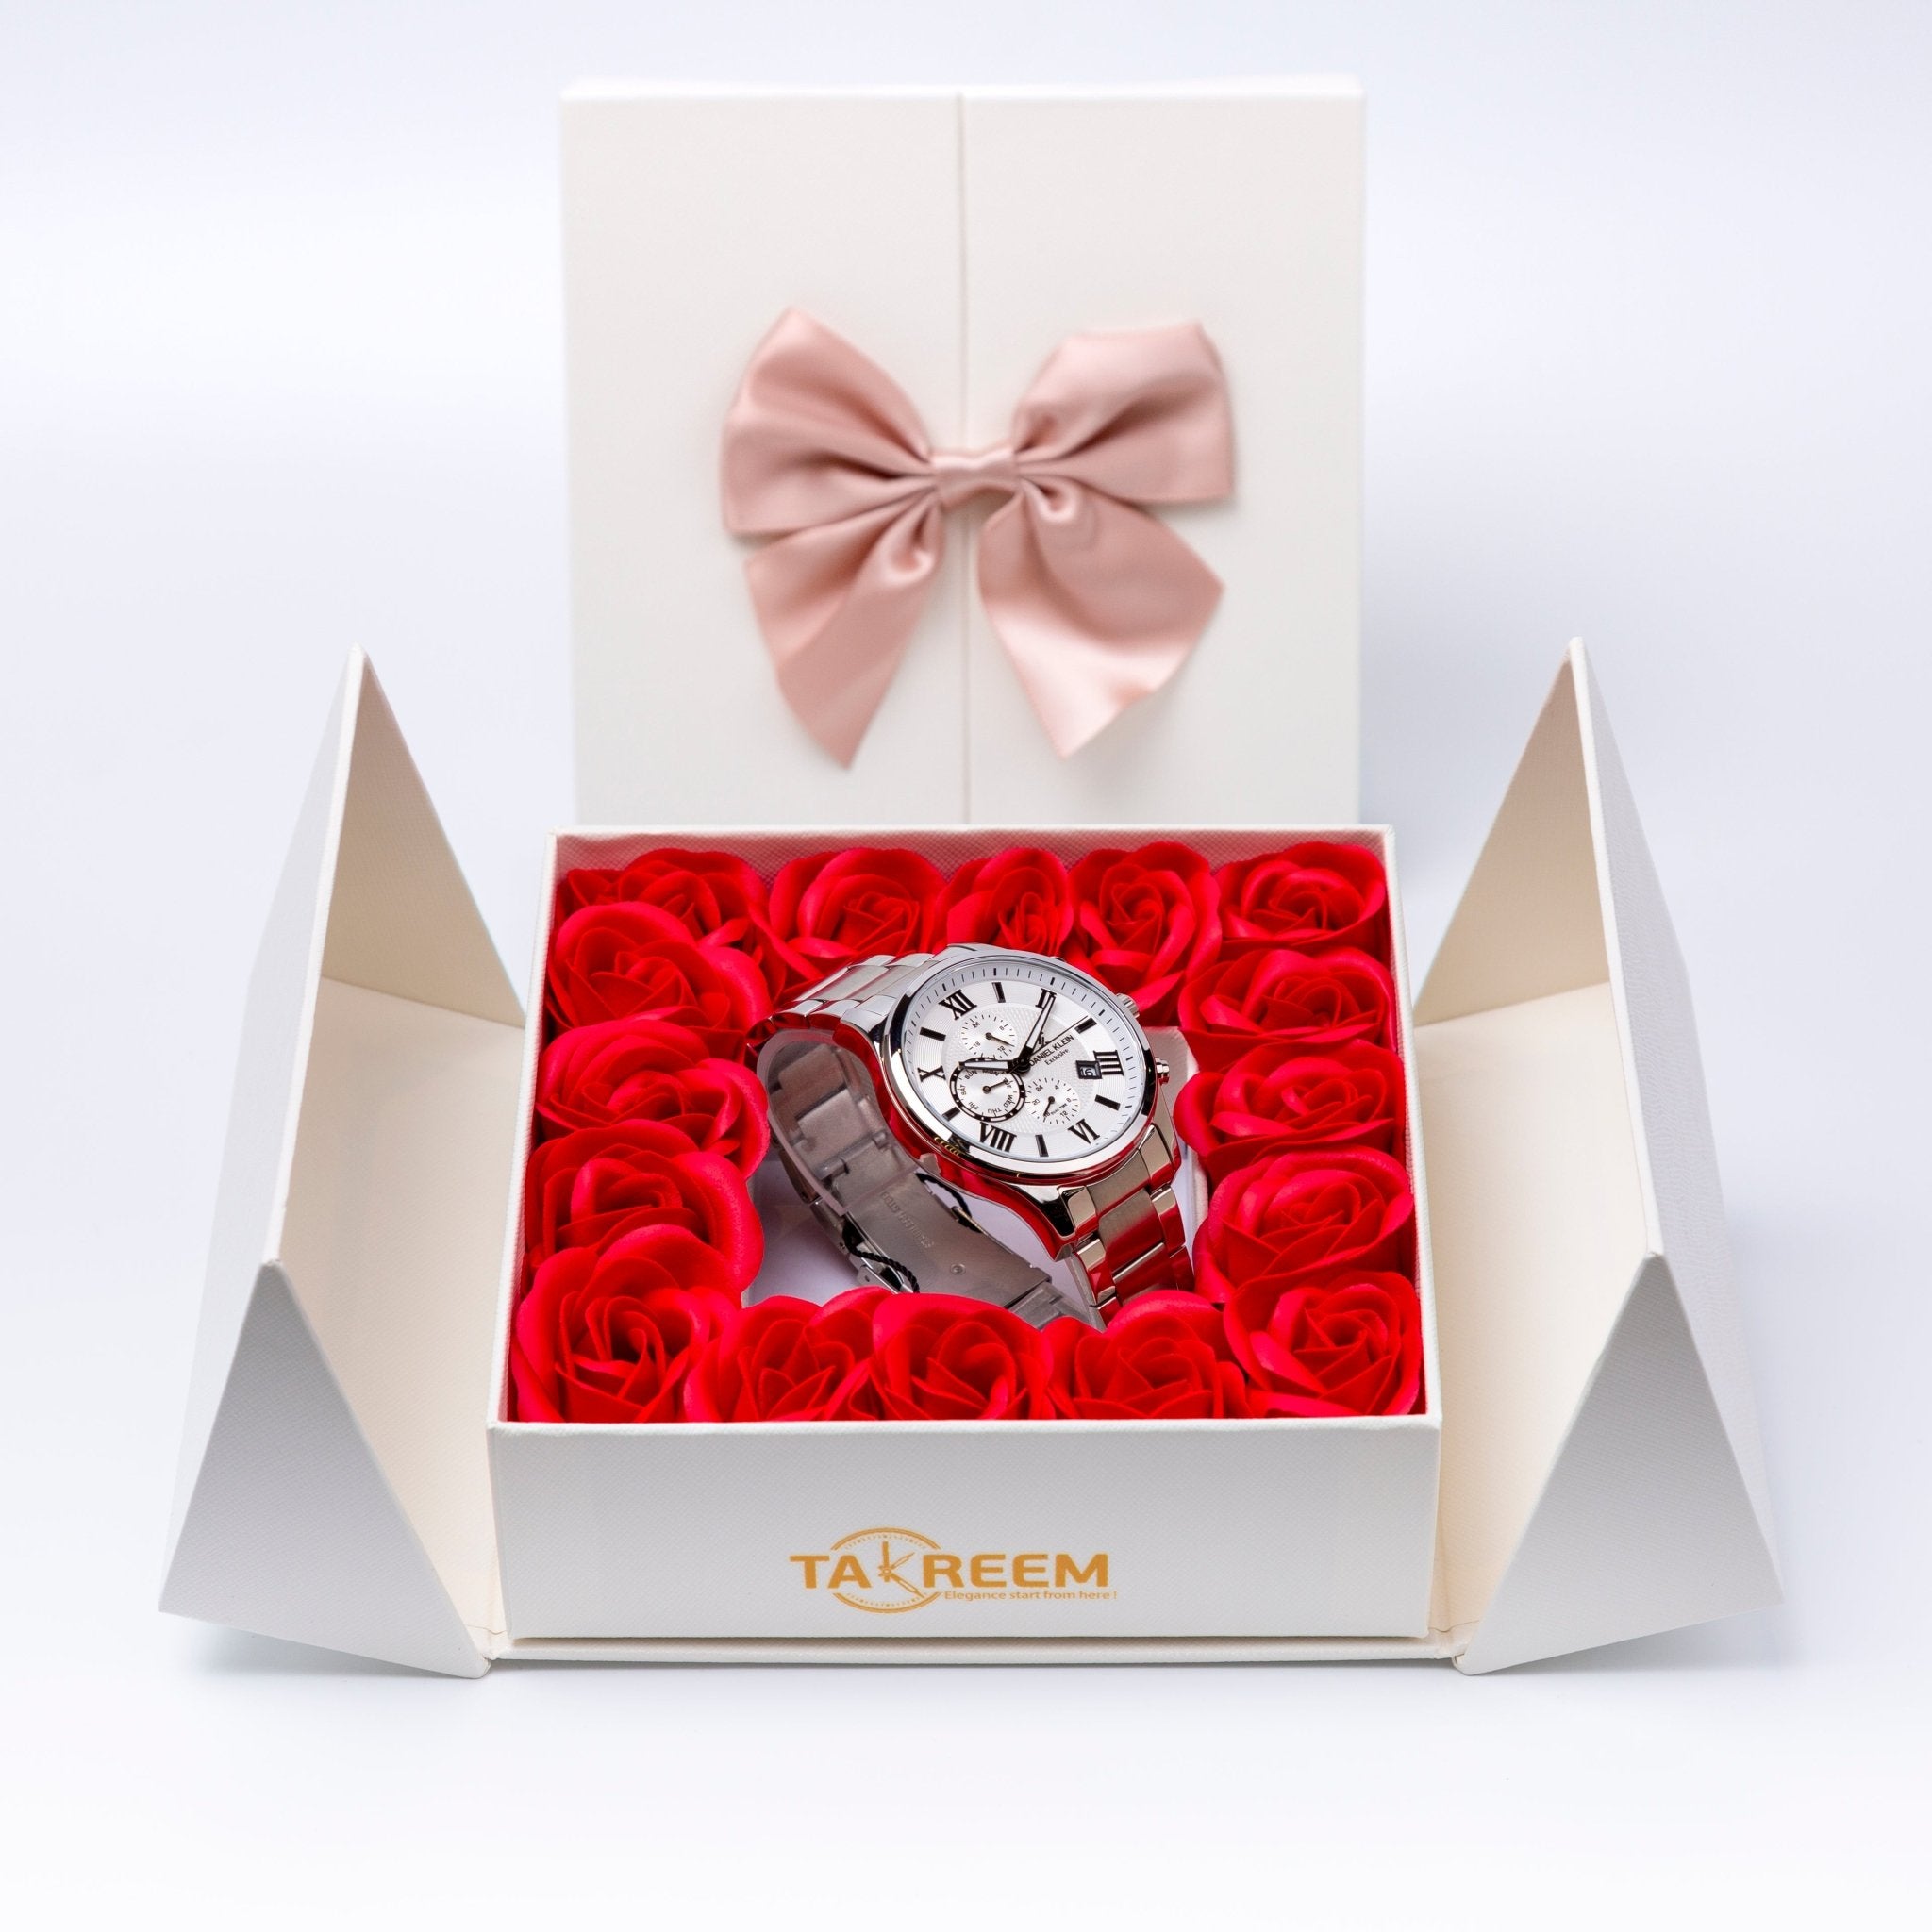 Flower Box - Gift For Men 3 - #shoFlower Box - Gift For Men 3p_name#Flower Box - Gift For Men 3Gift Boxes & TinsTakreemTakreem.joMenWatchFlower Box - Gift For Men 3 - Takreem.jo